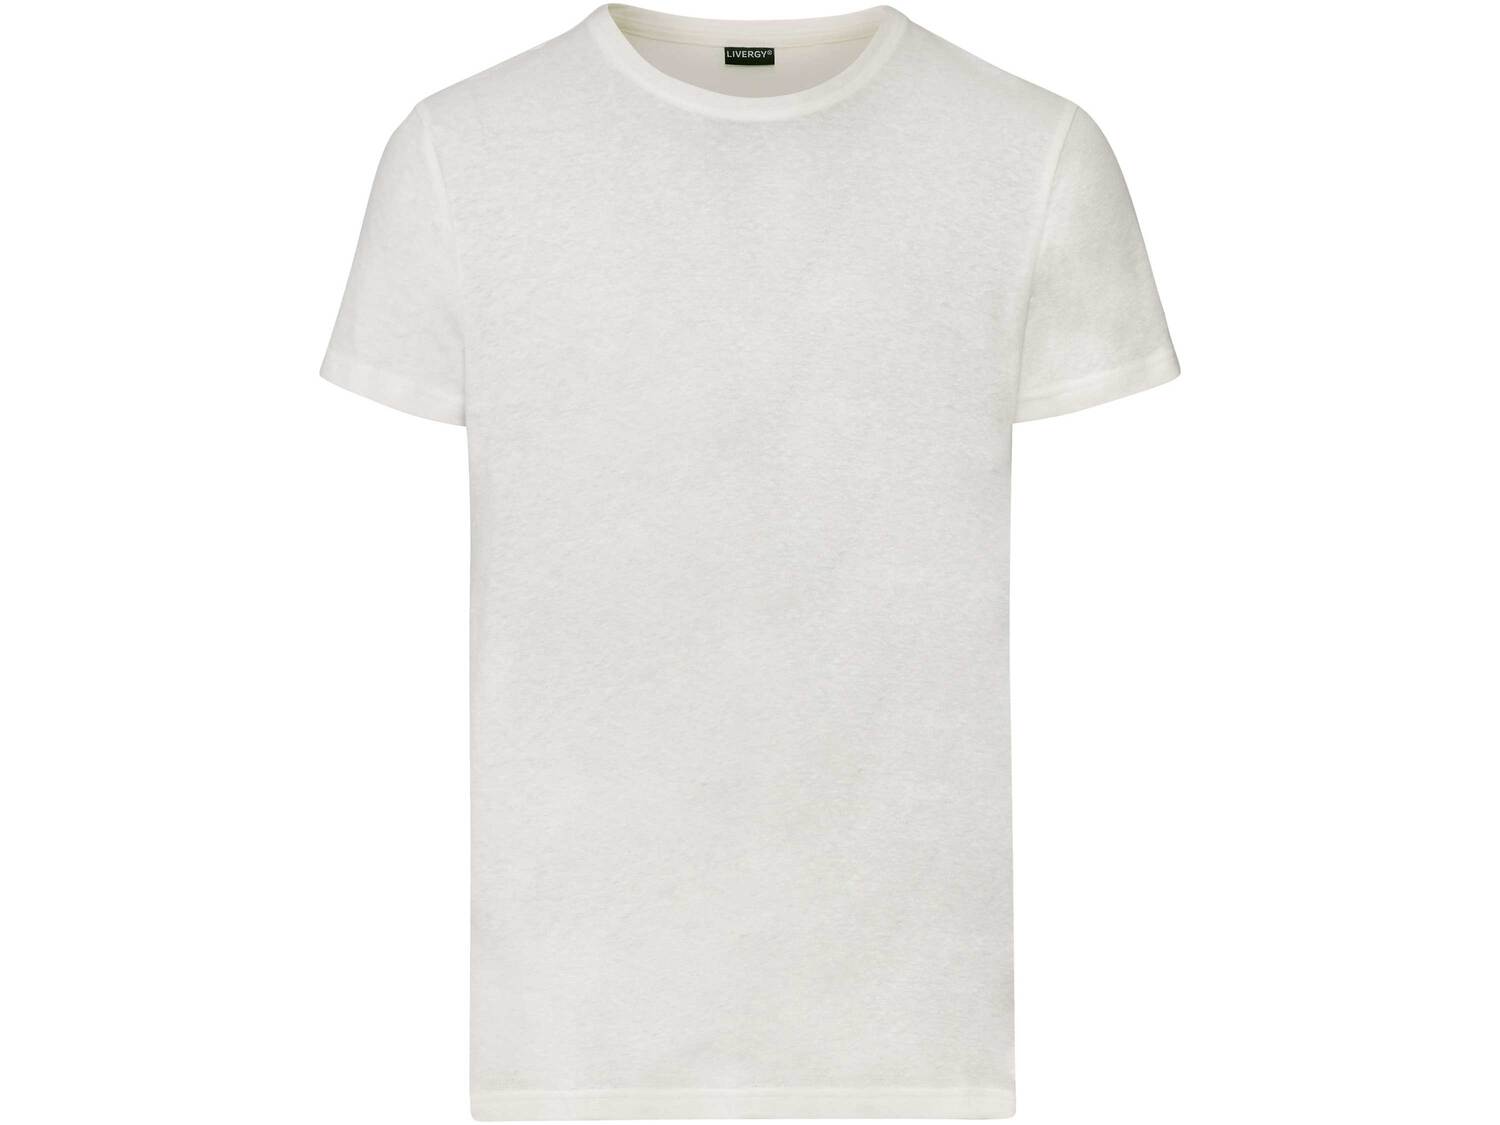 T-shirt en lin , le prix 6.99 € 
- Du S au XL selon modèle
- Ex. 53 % lin ...